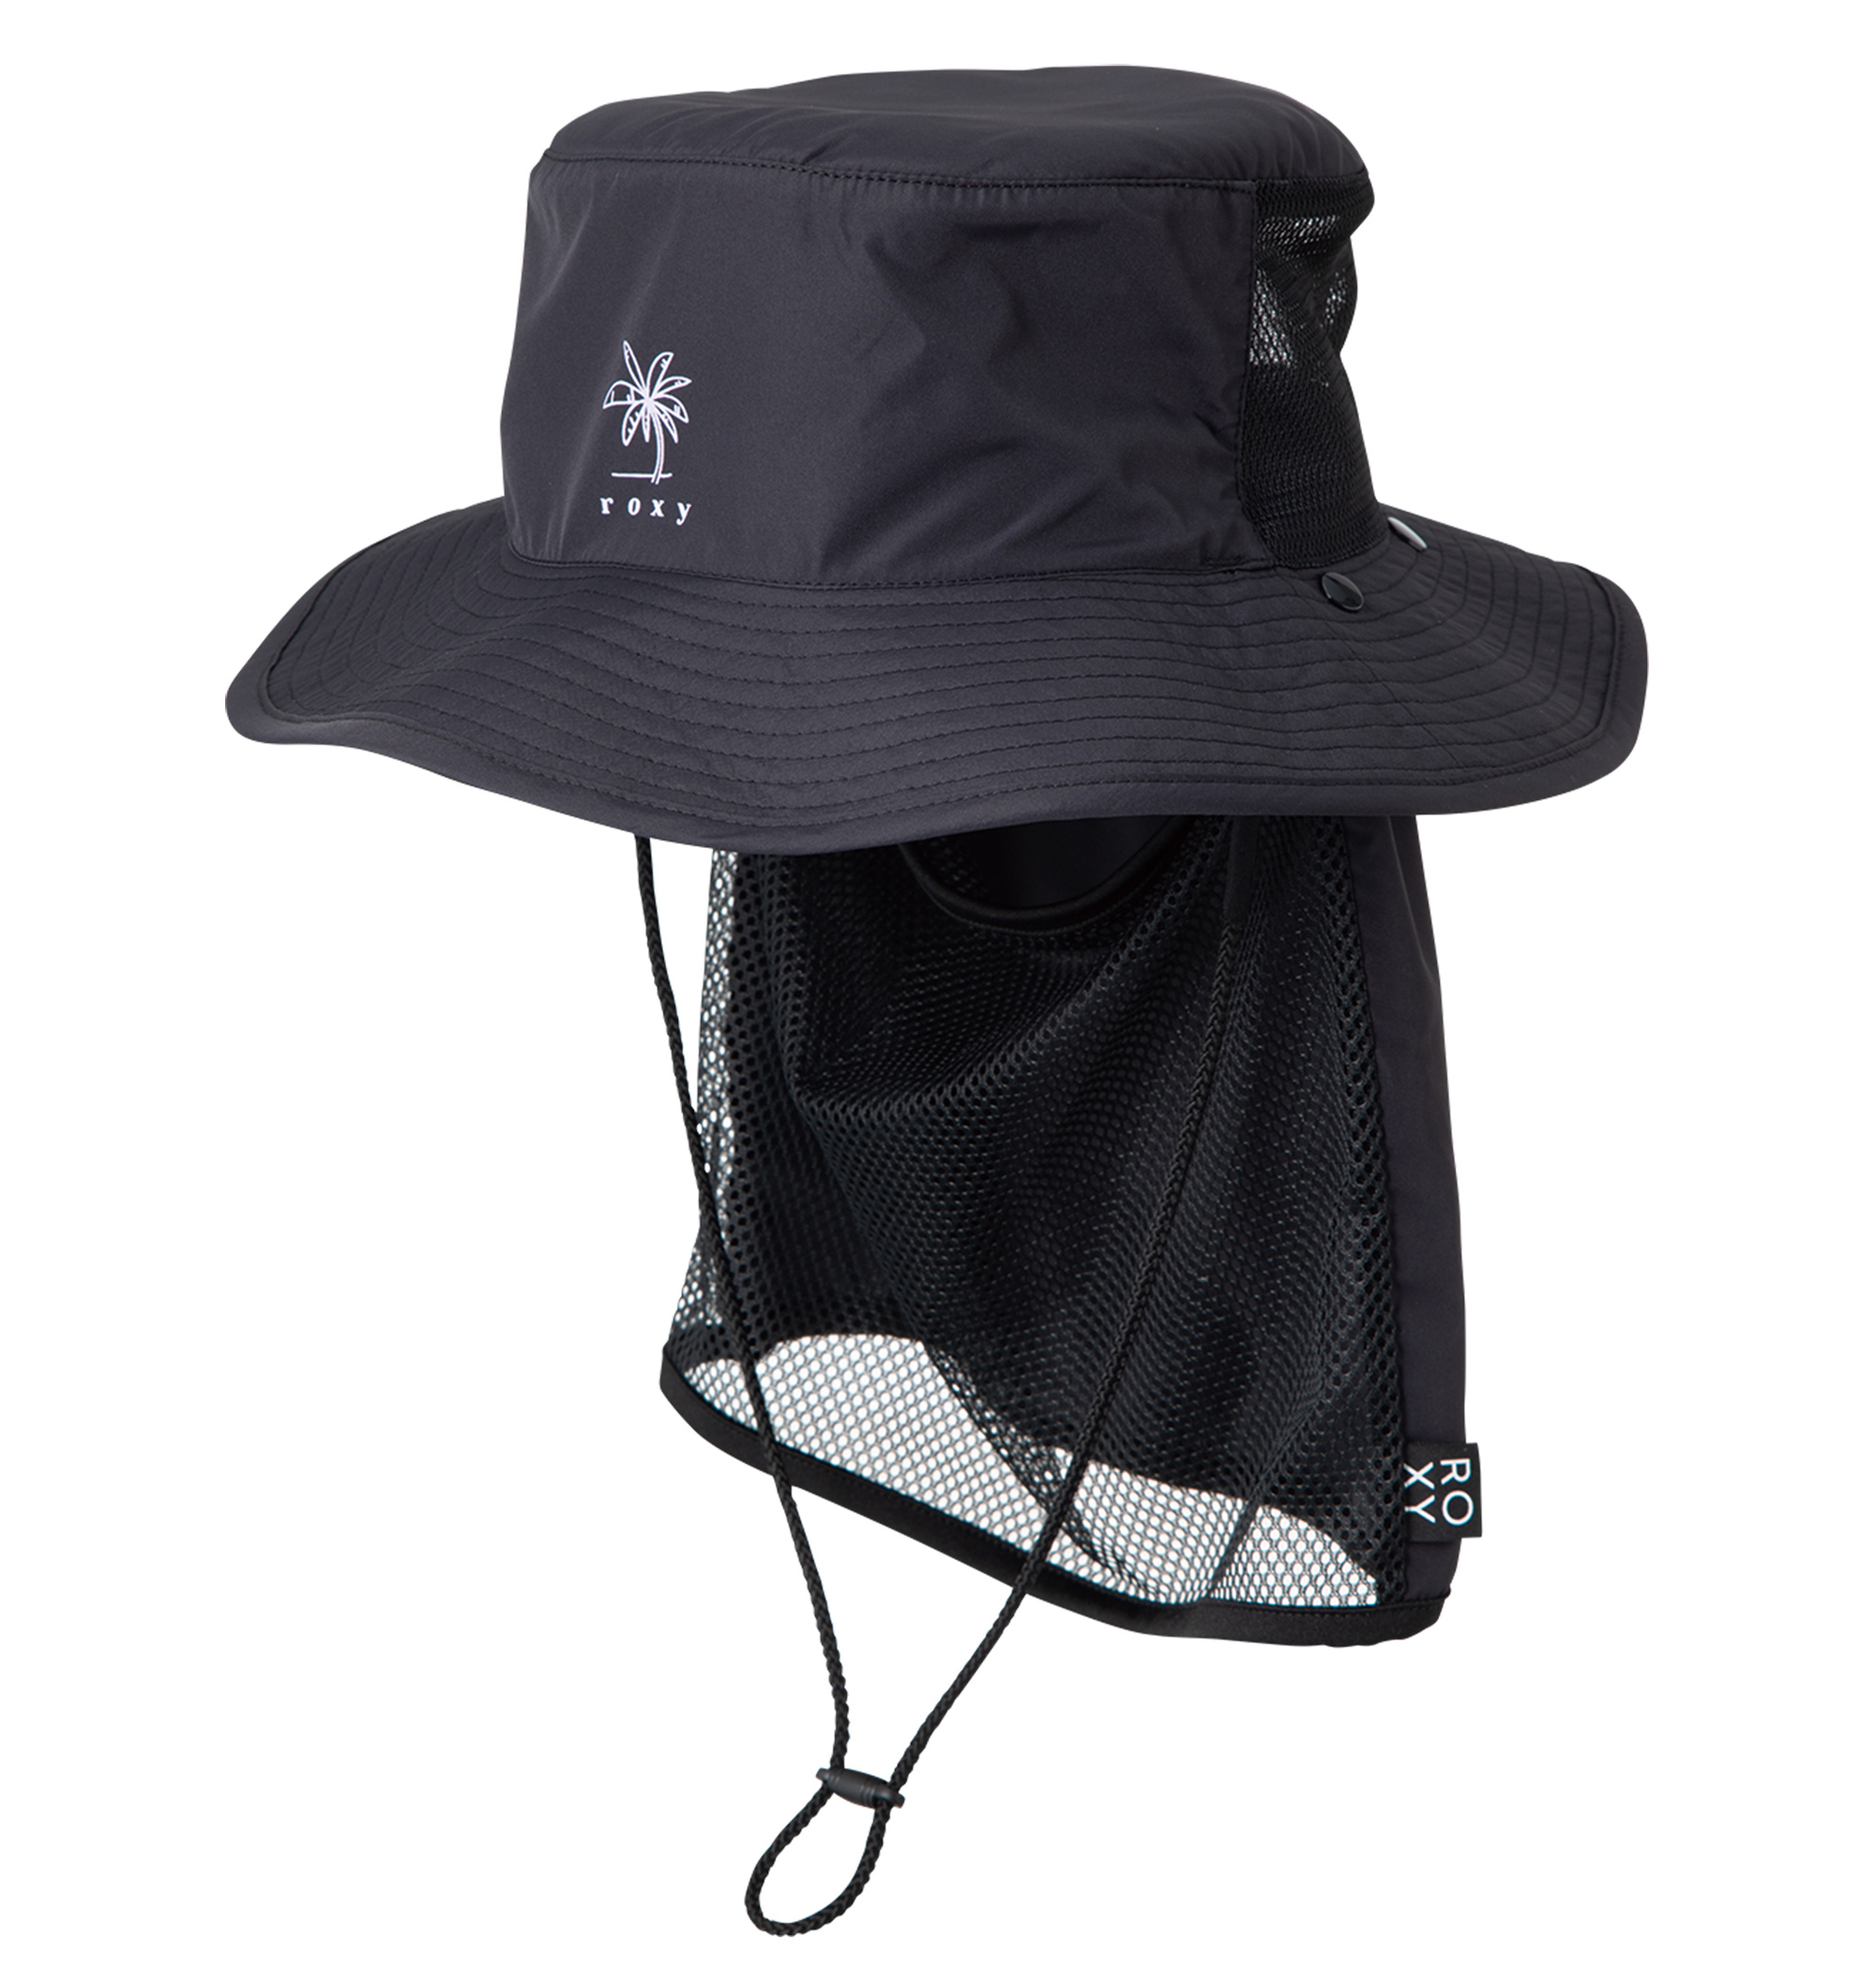 UV SUP CAMP HAT ポリエステル100% UV CUT 撥水加工素材の日焼け防止ハットの大画像